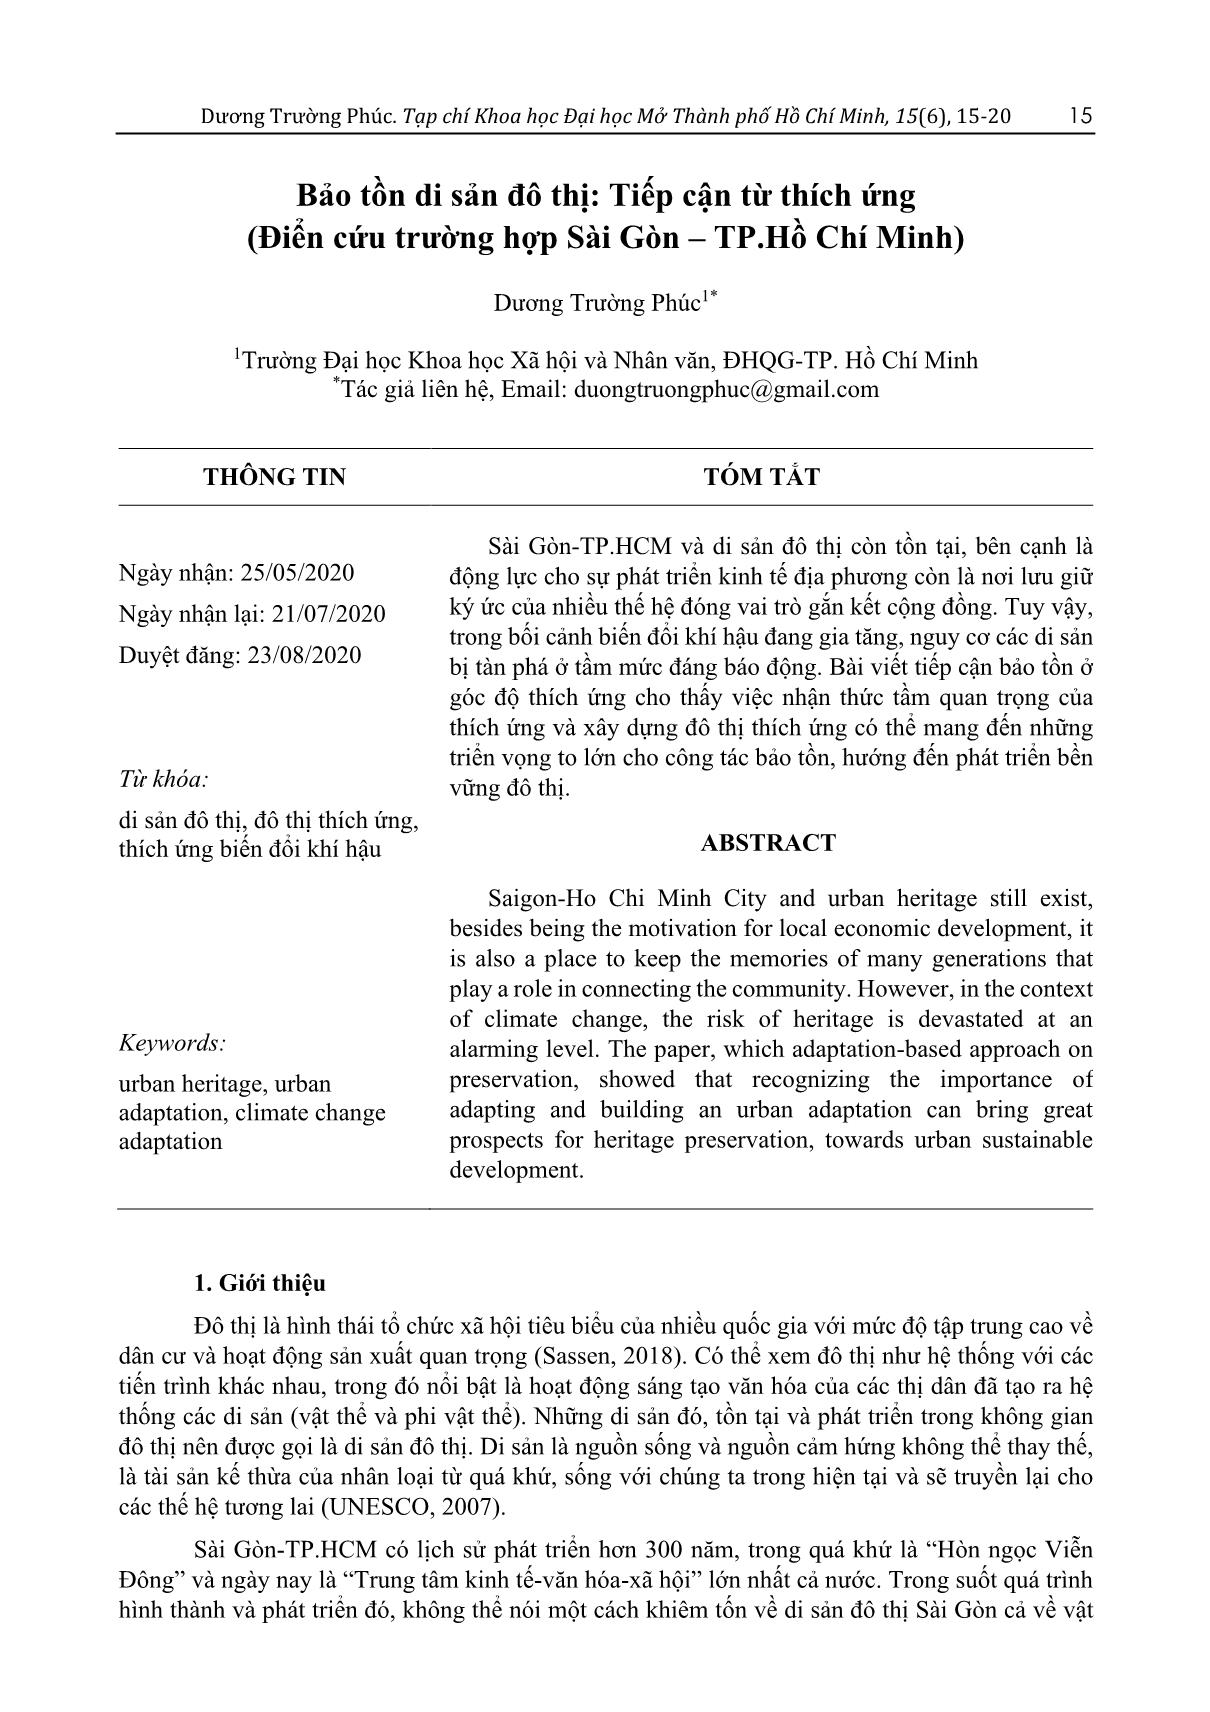 Bảo tồn di sản đô thị: Tiếp cận từ thích ứng (Điển cứu trường hợp Sài Gòn - TP.Hồ Chí Minh) trang 1